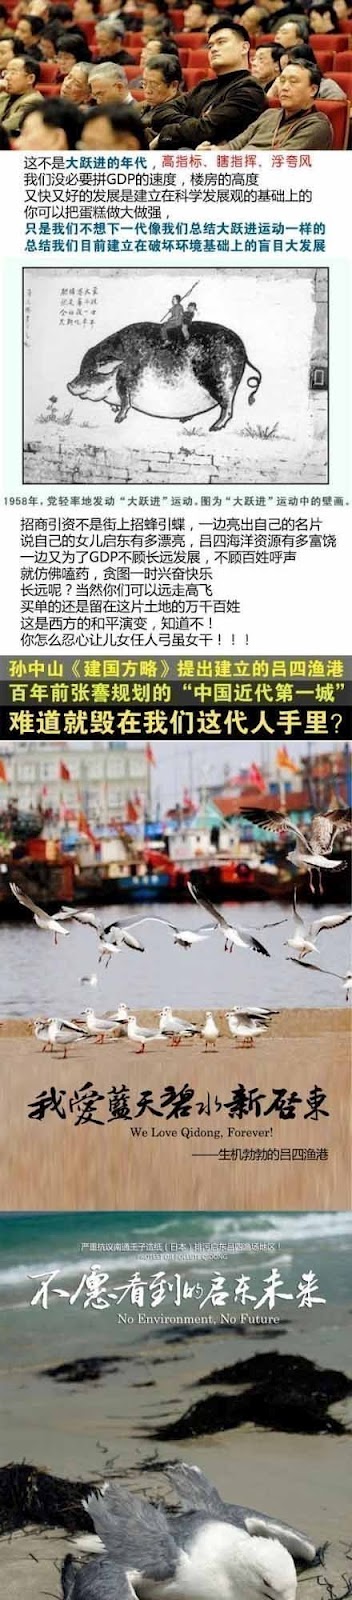 中国、王子製紙の工場排水計画「海産物に害」の噂からデモが起き暴徒化 日本への反発の声も